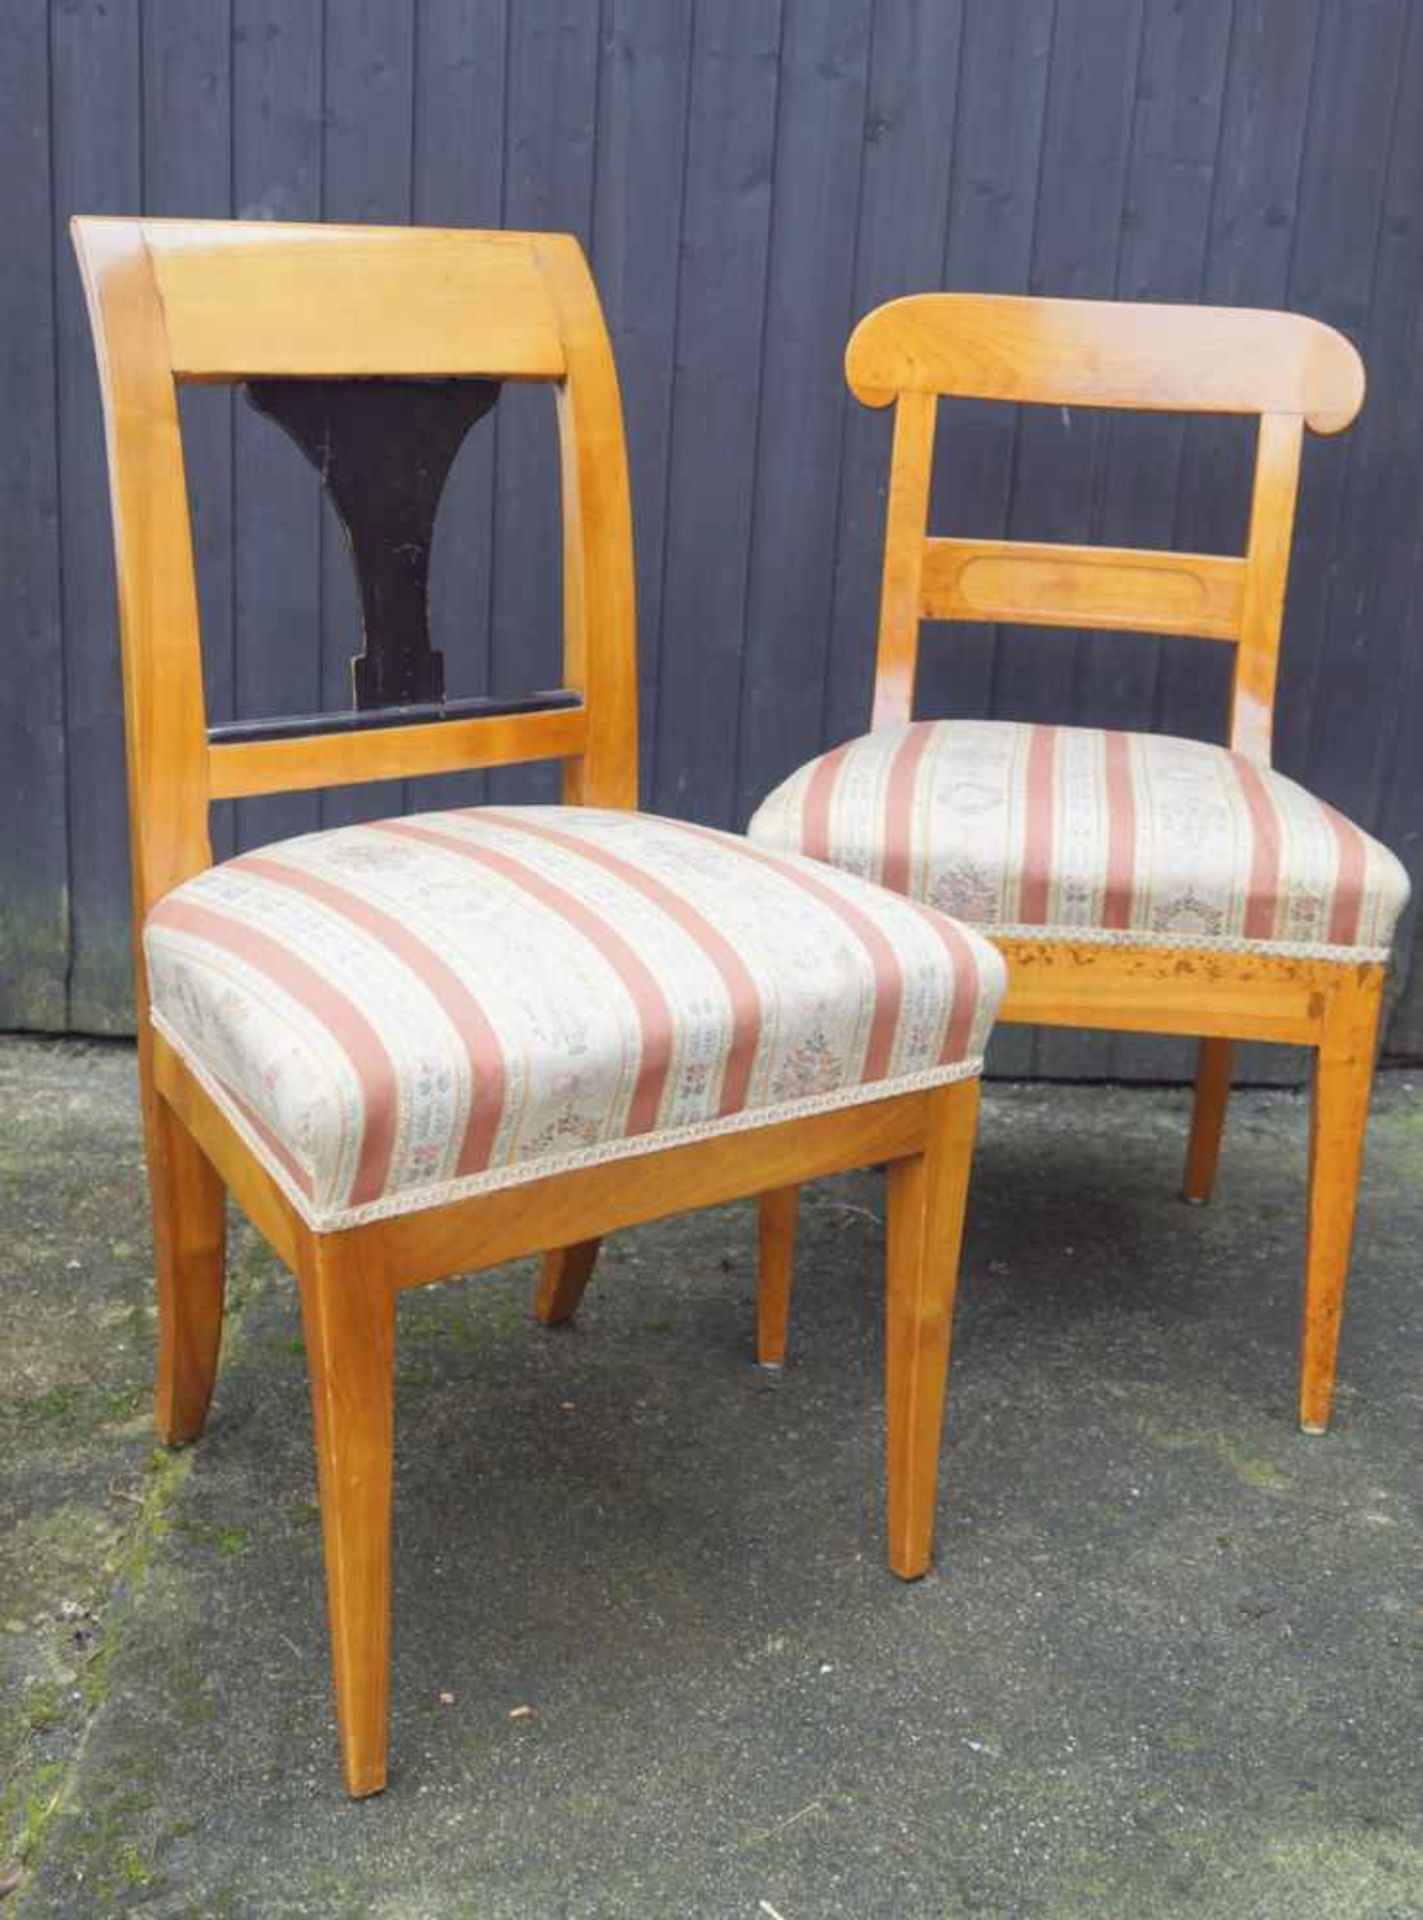 Paar Stühle des Biedermeier, deutsch, um 1830 Kirsche massiv und furniert, Höhe 80cm, Breite 40cm,